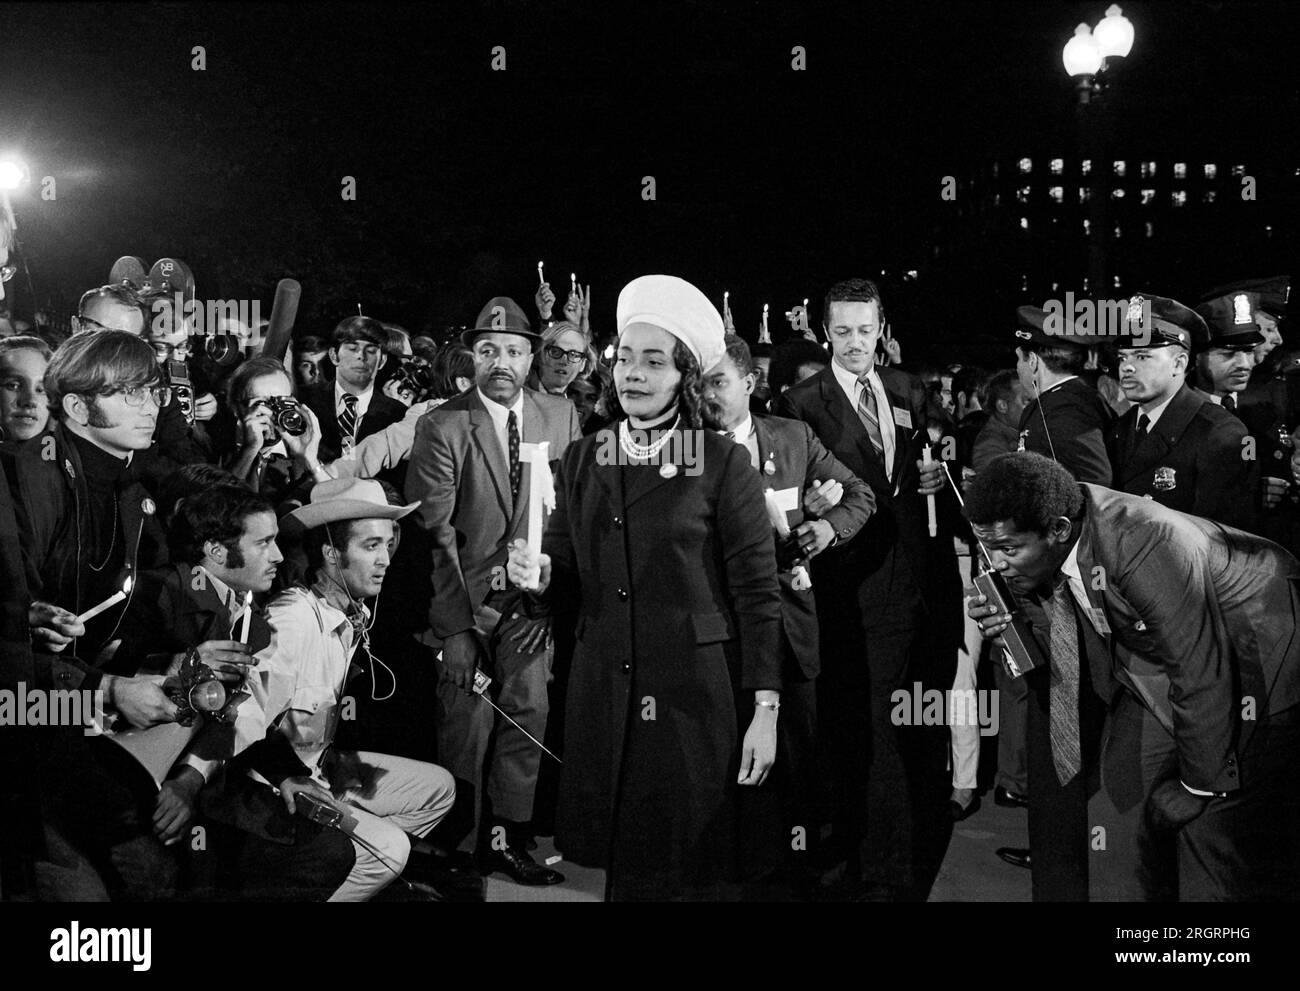 Washington, D.C., 15. Oktober 1969 Coretta Scott King hielt eine Kerze und führte einen marsch bei Nacht zum Weißen Haus als Teil des Moratoriums, um den Krieg in Vietnam zu beenden. Stockfoto